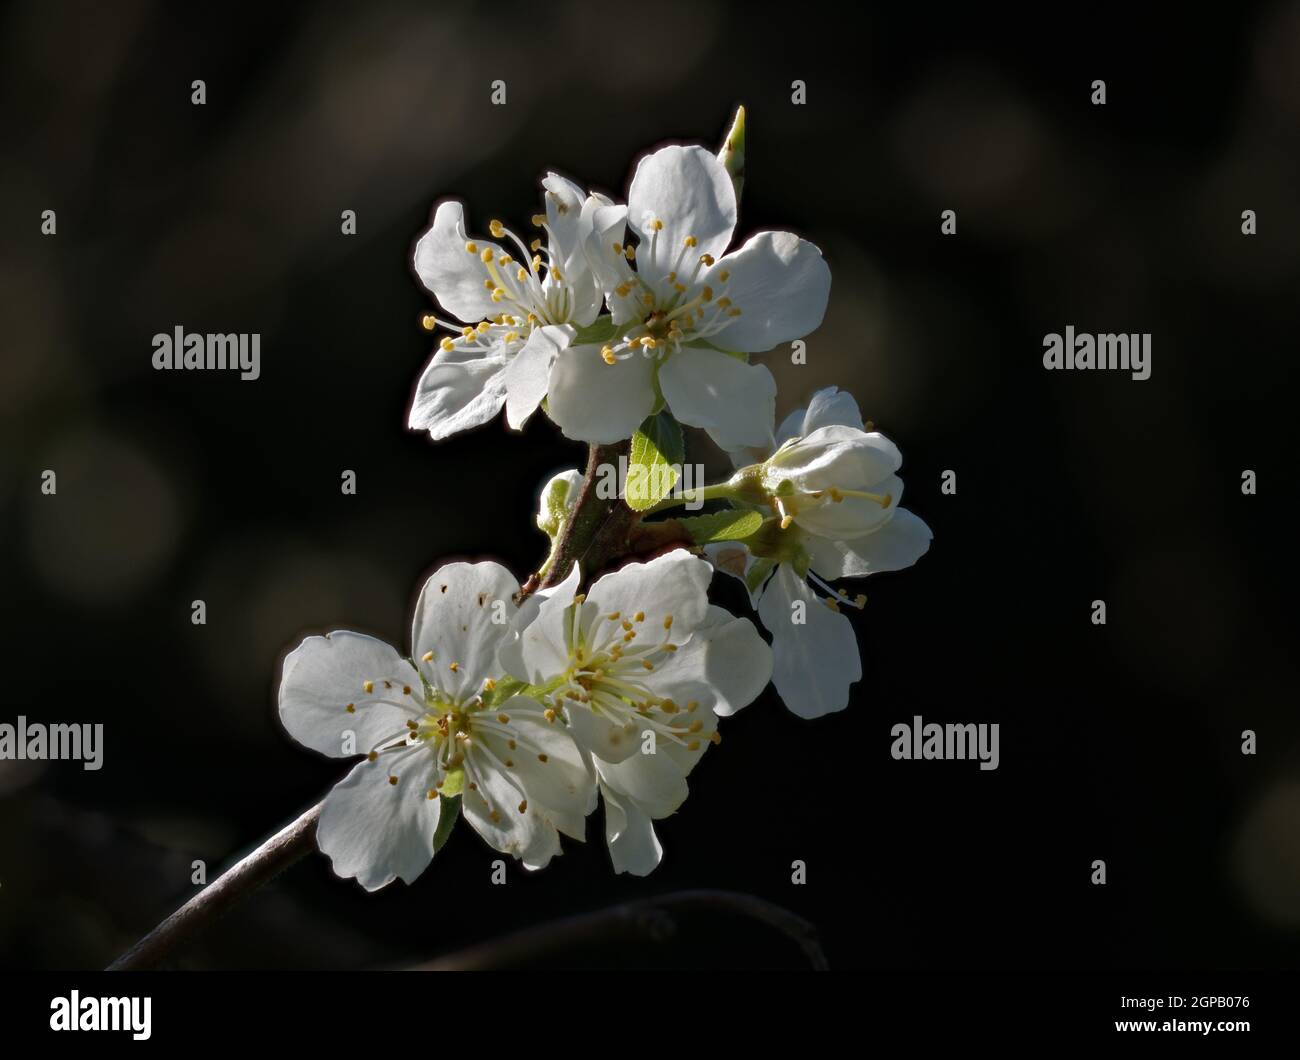 White Victoria Plum blossom against dark background. Stock Photo